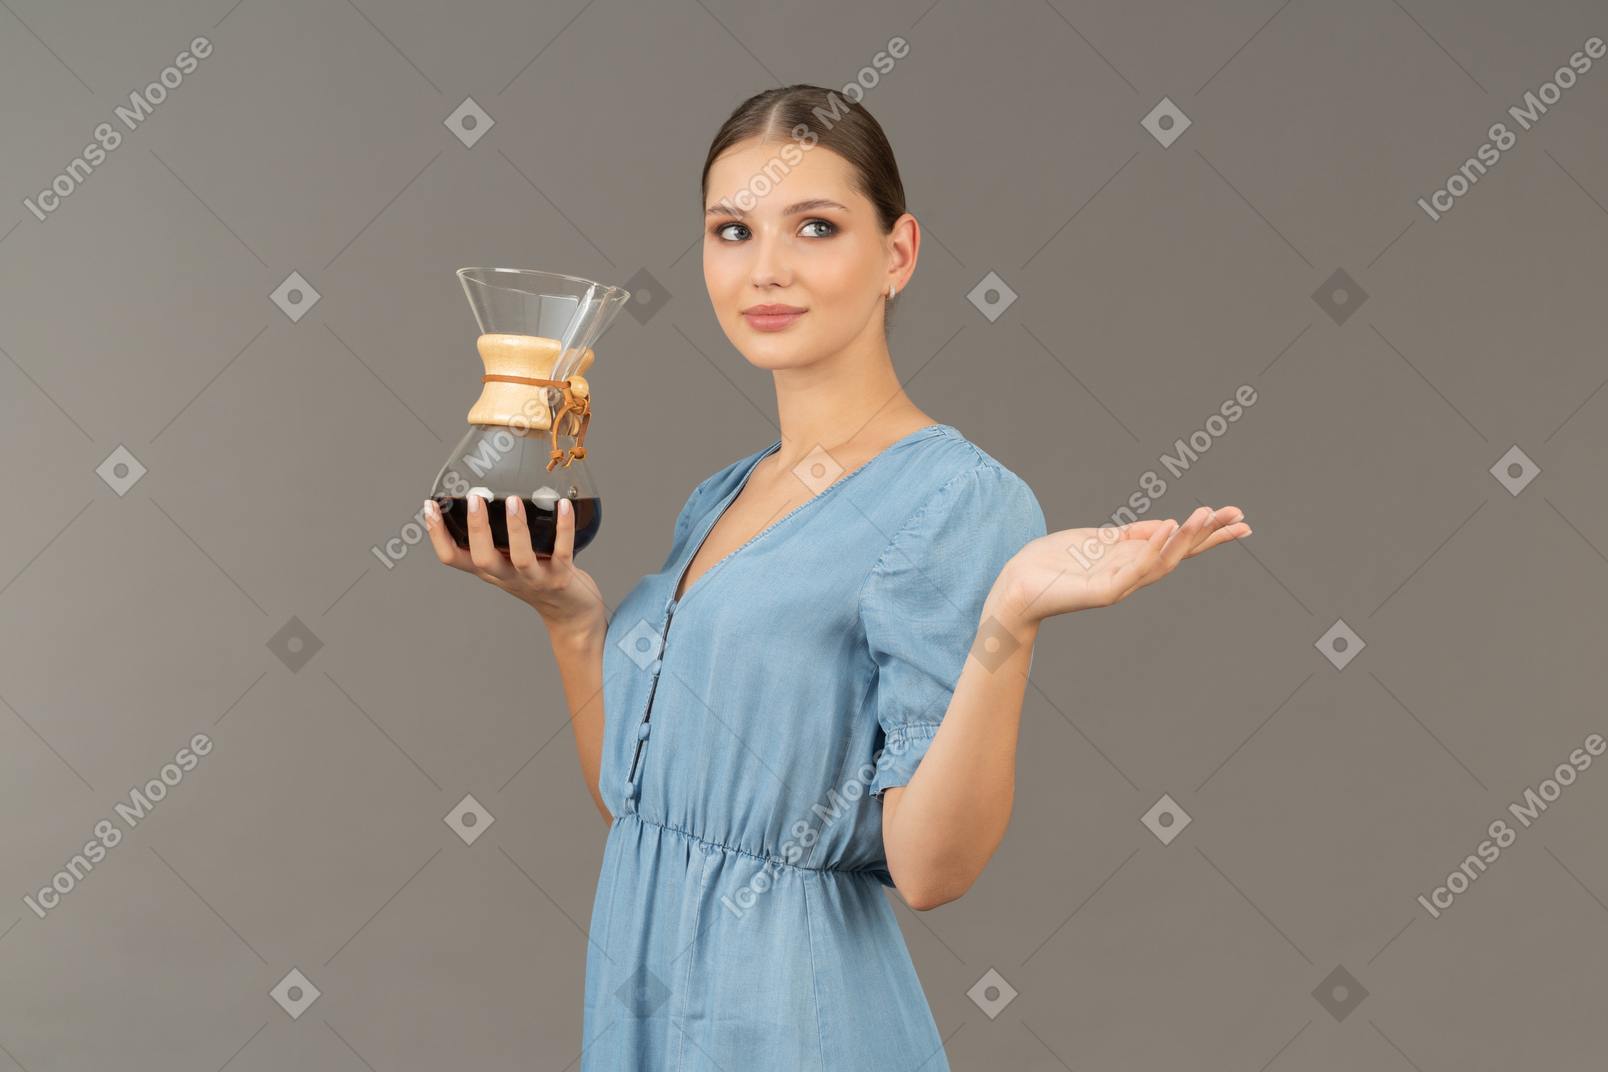 Vue de trois quarts d'une jeune femme en robe bleue tenant un pichet de vin